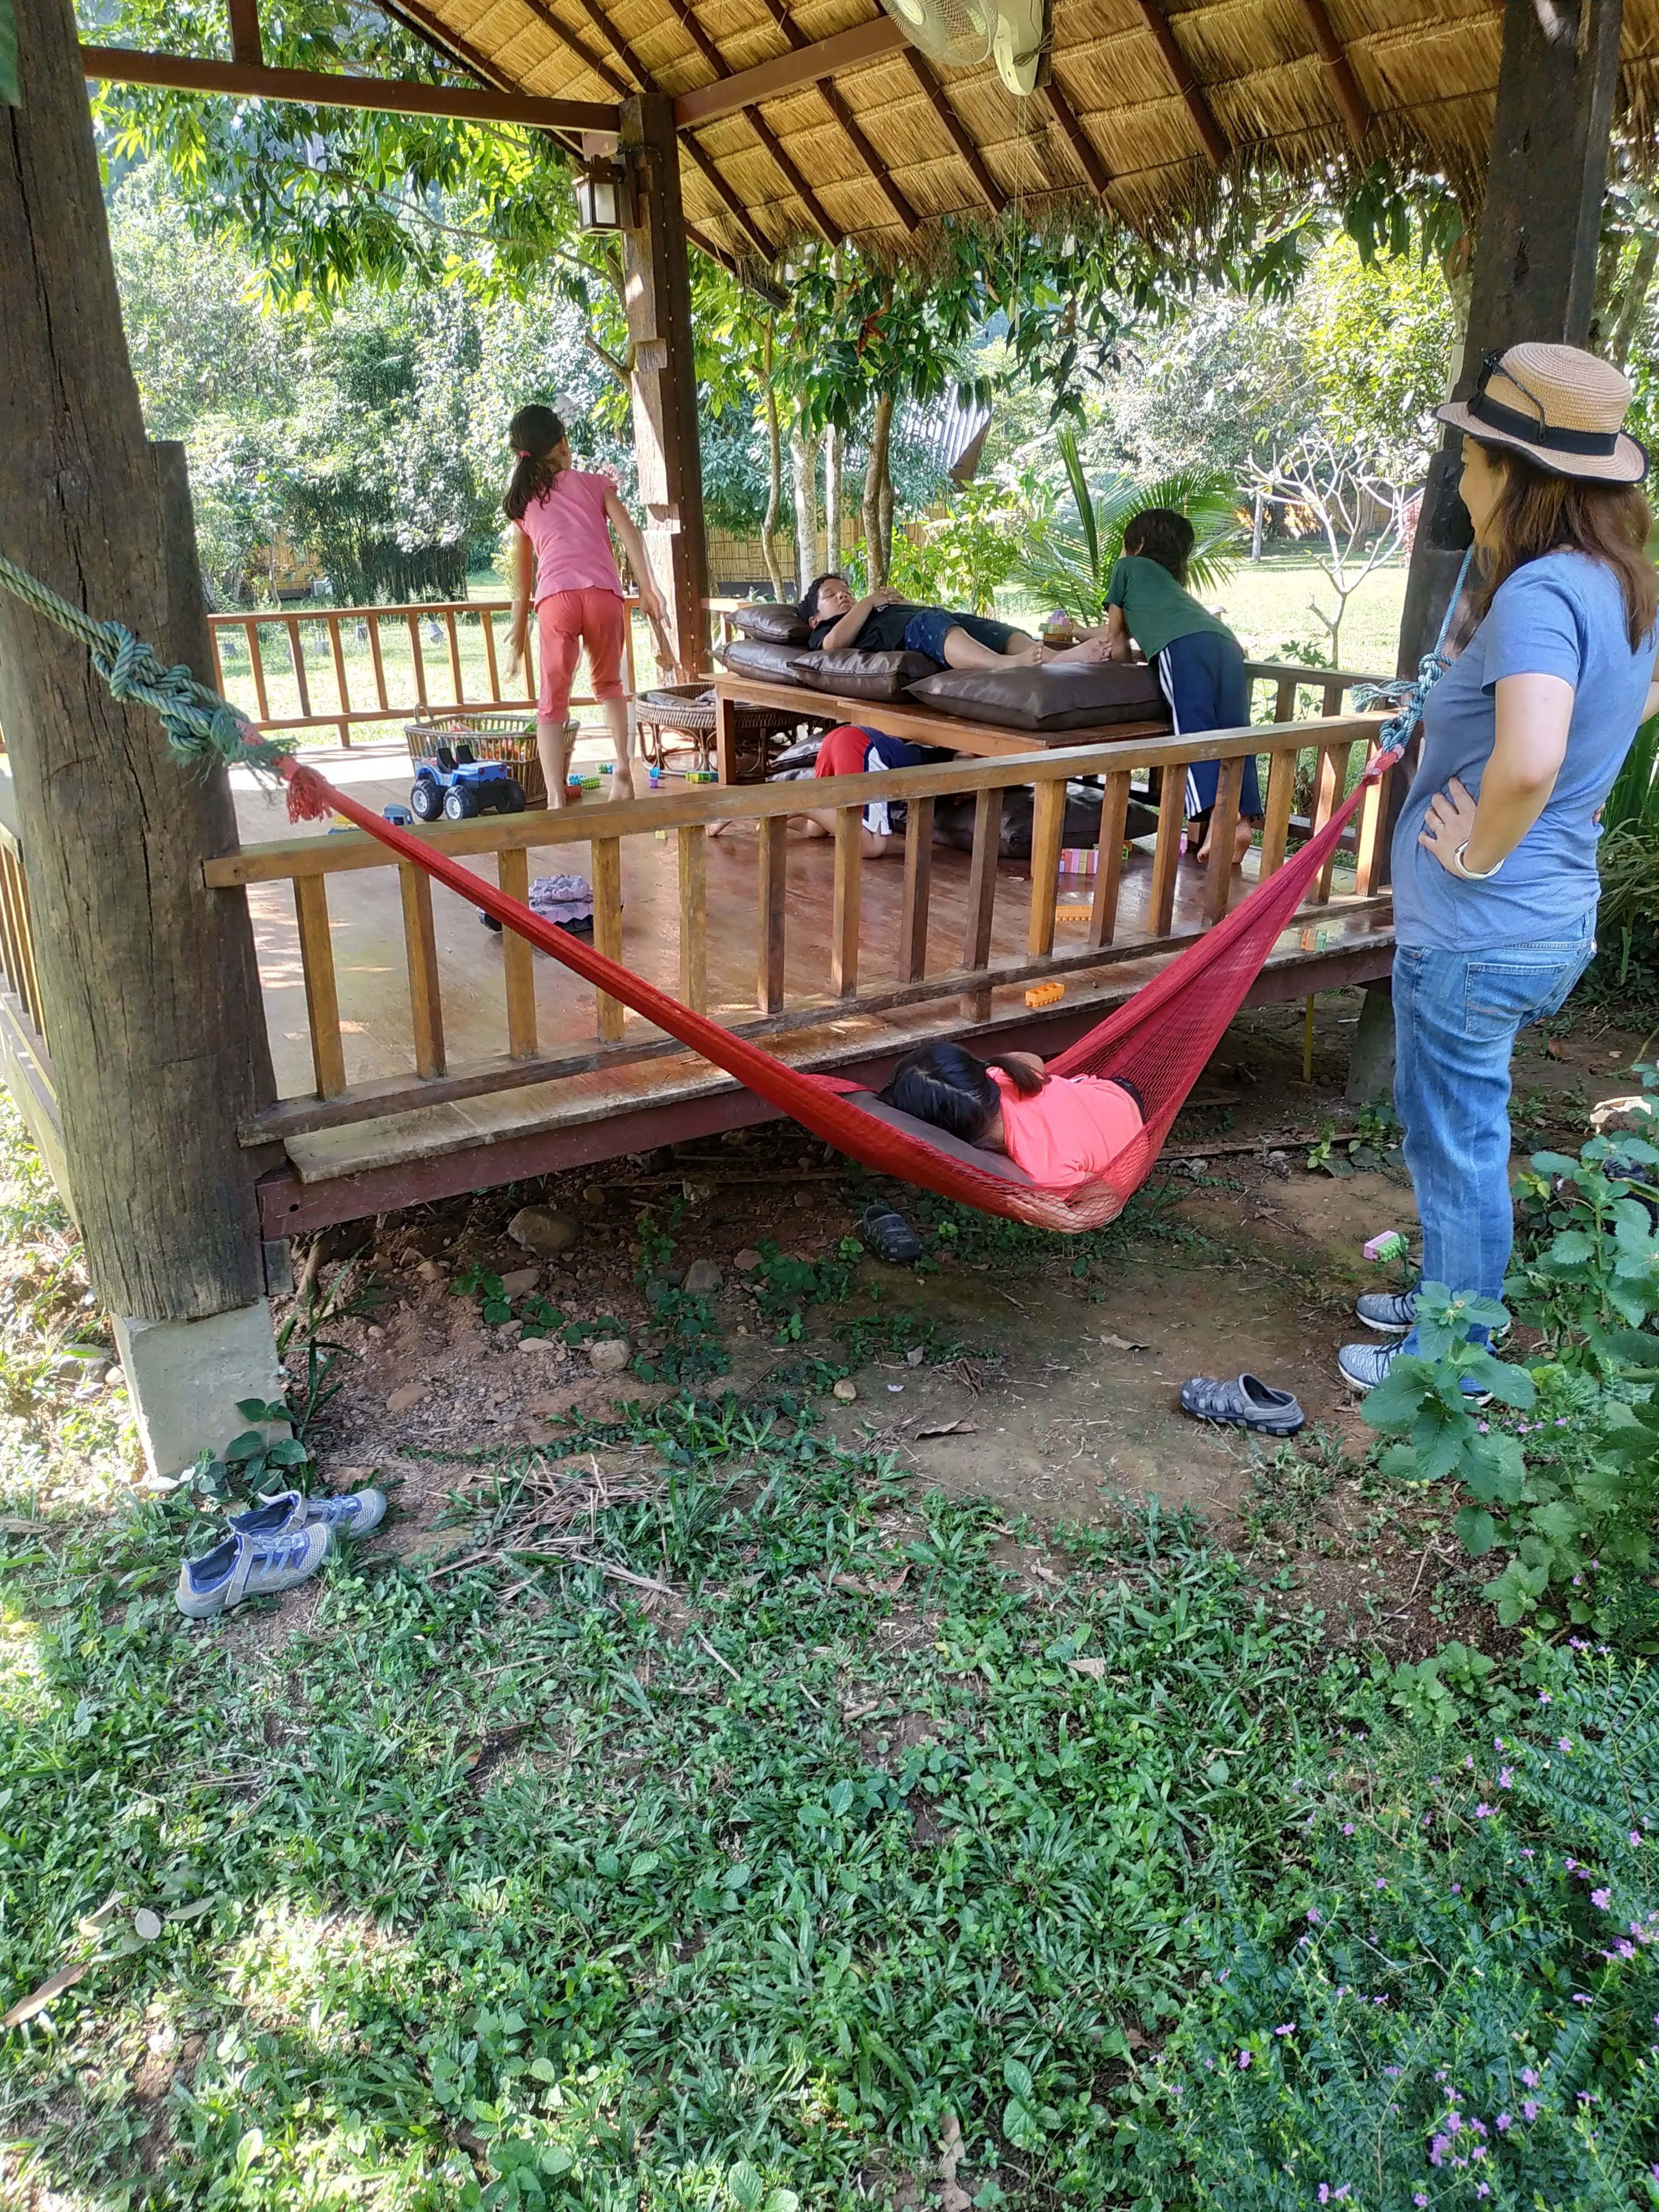 Selesai makan anak anak masih bisa bermain di sebuah pondokan yang menyediakan mainan untuk anak anak Mungkin lain kali ke Chiang Dao bisa juga dicoba